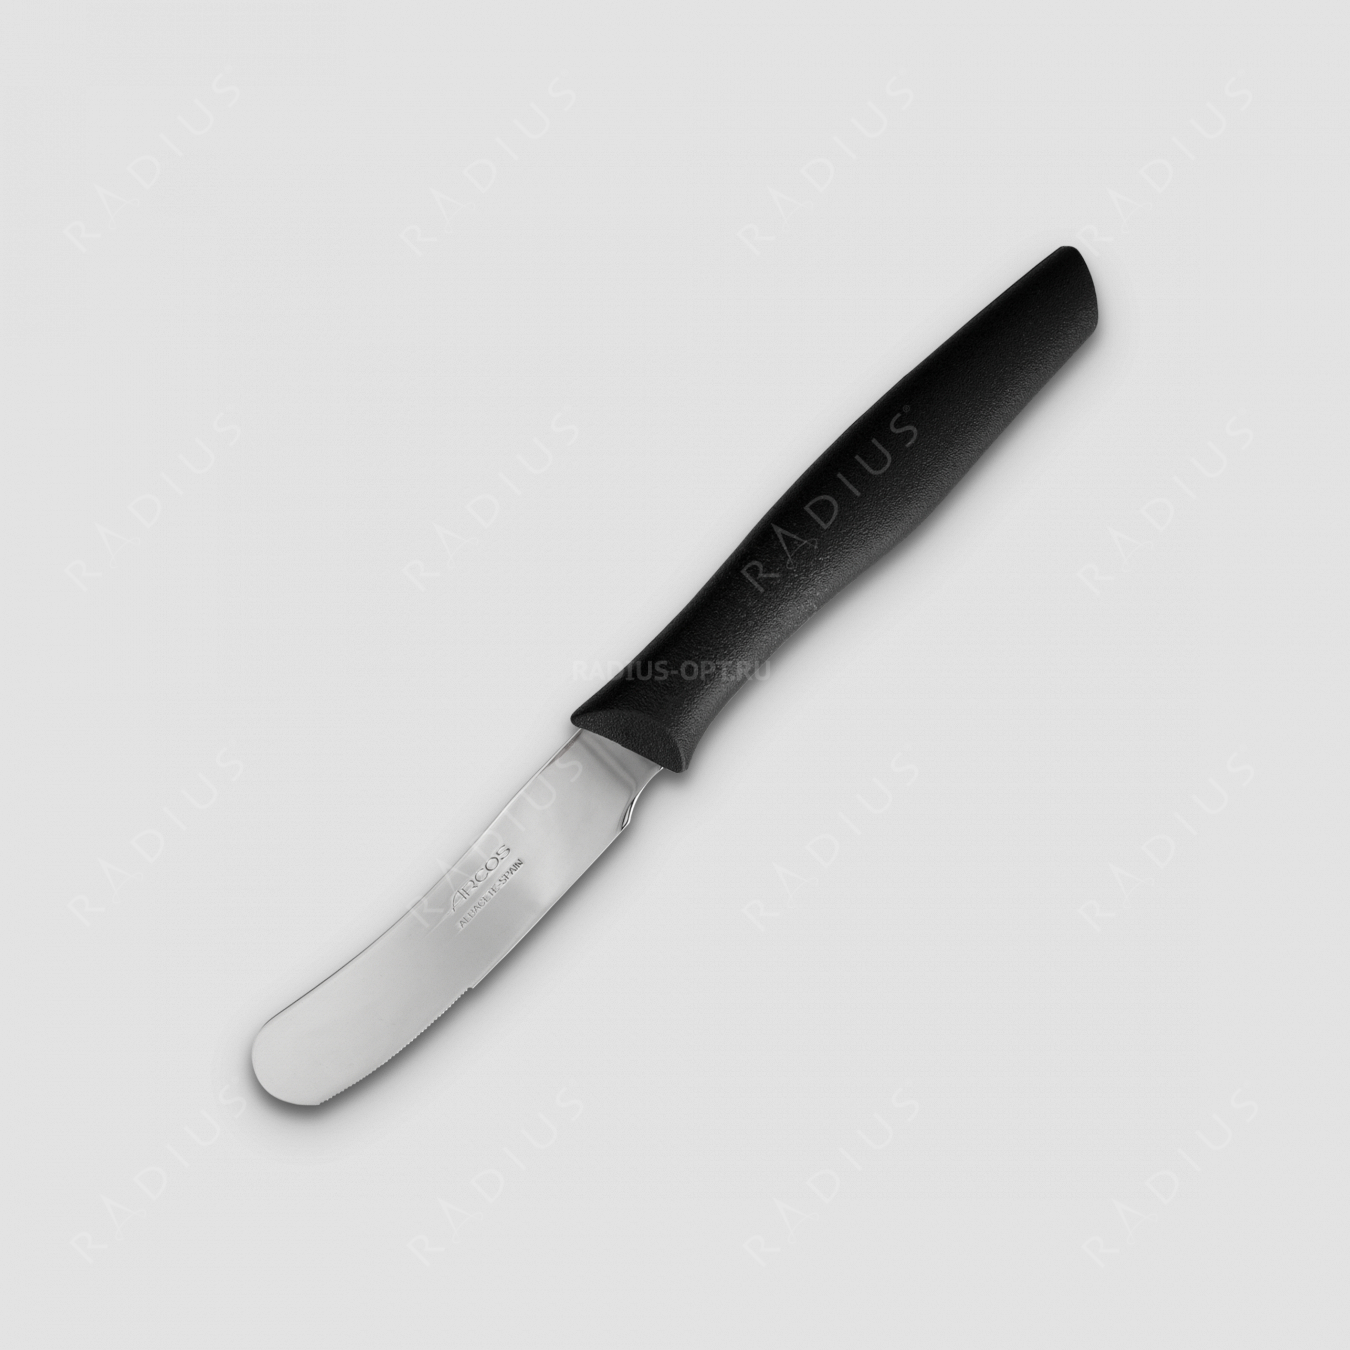 Нож кухонный для масла 9 см, рукоять черная, серия Nova, ARCOS, Испания